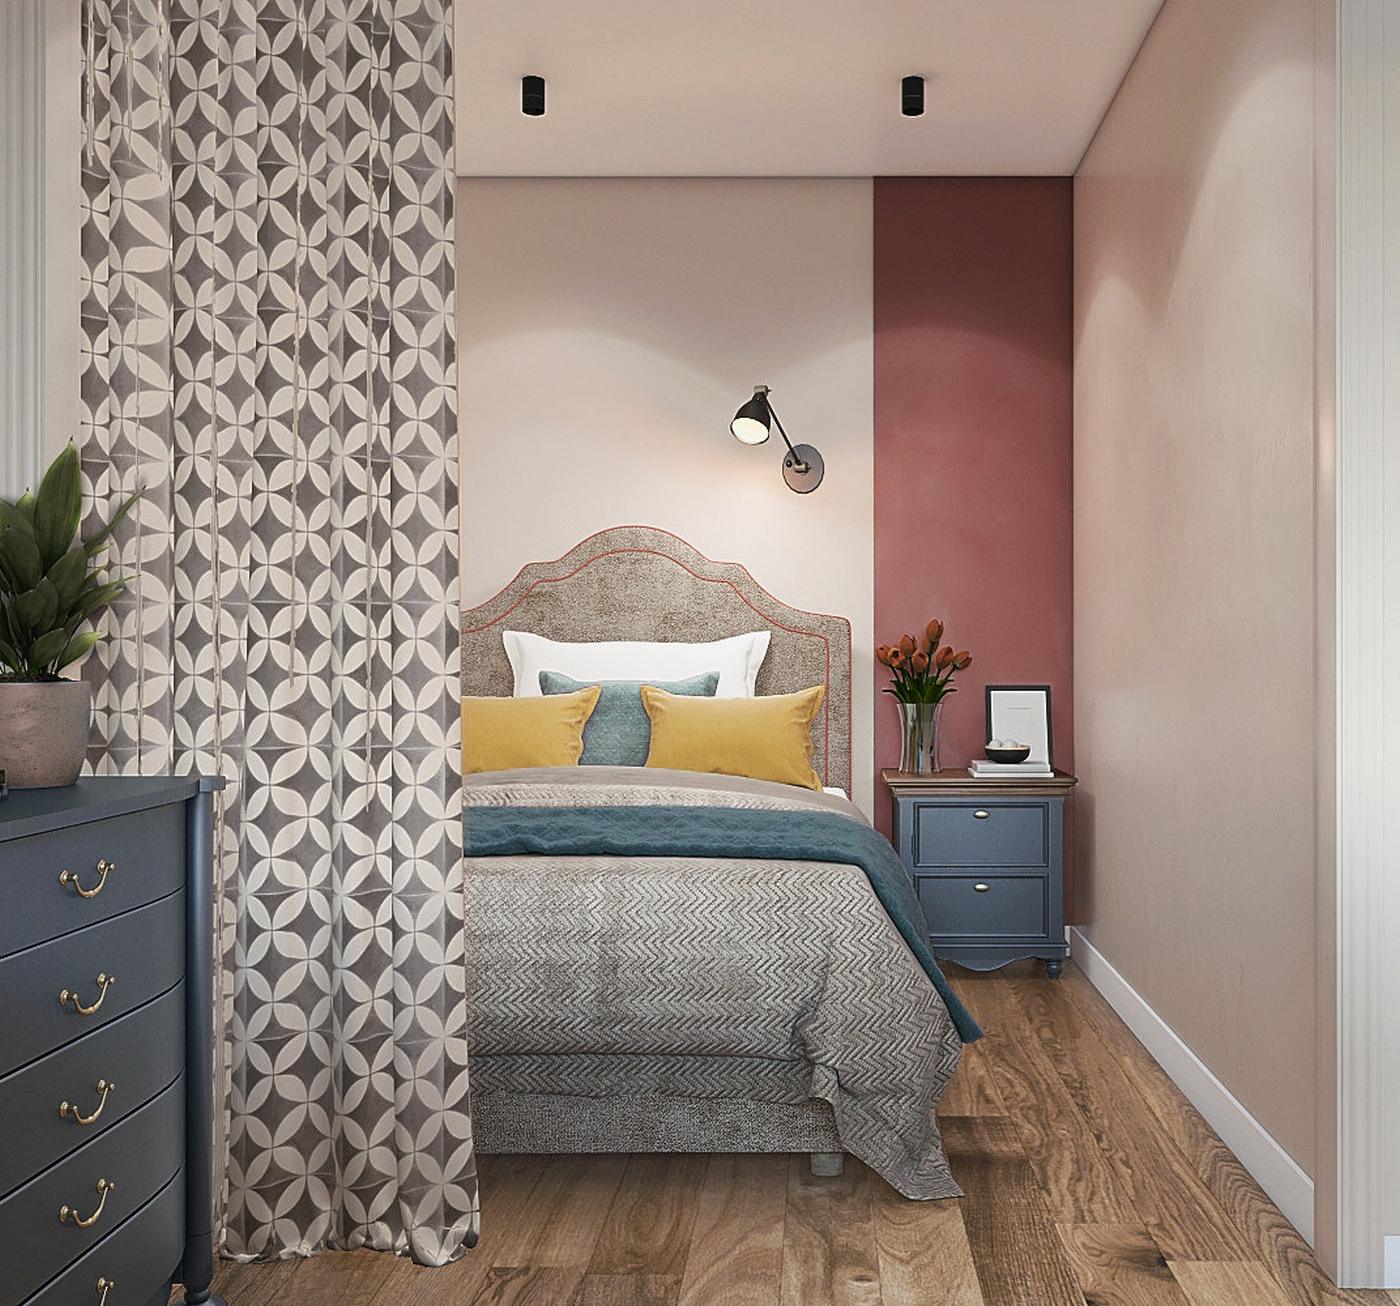 Phòng ngủ lựa chọn phong cách thiết kế sang trọng với ván đầu giường đẹp, vững chãi. Các gam màu được sử dụng bao gồm màu tường be phối hồng. Gối ngủ màu trắng - xanh - vàng mù tạt, bọc giường và chăn màu xám hoạ tiết zigzag nhẹ nhàng.